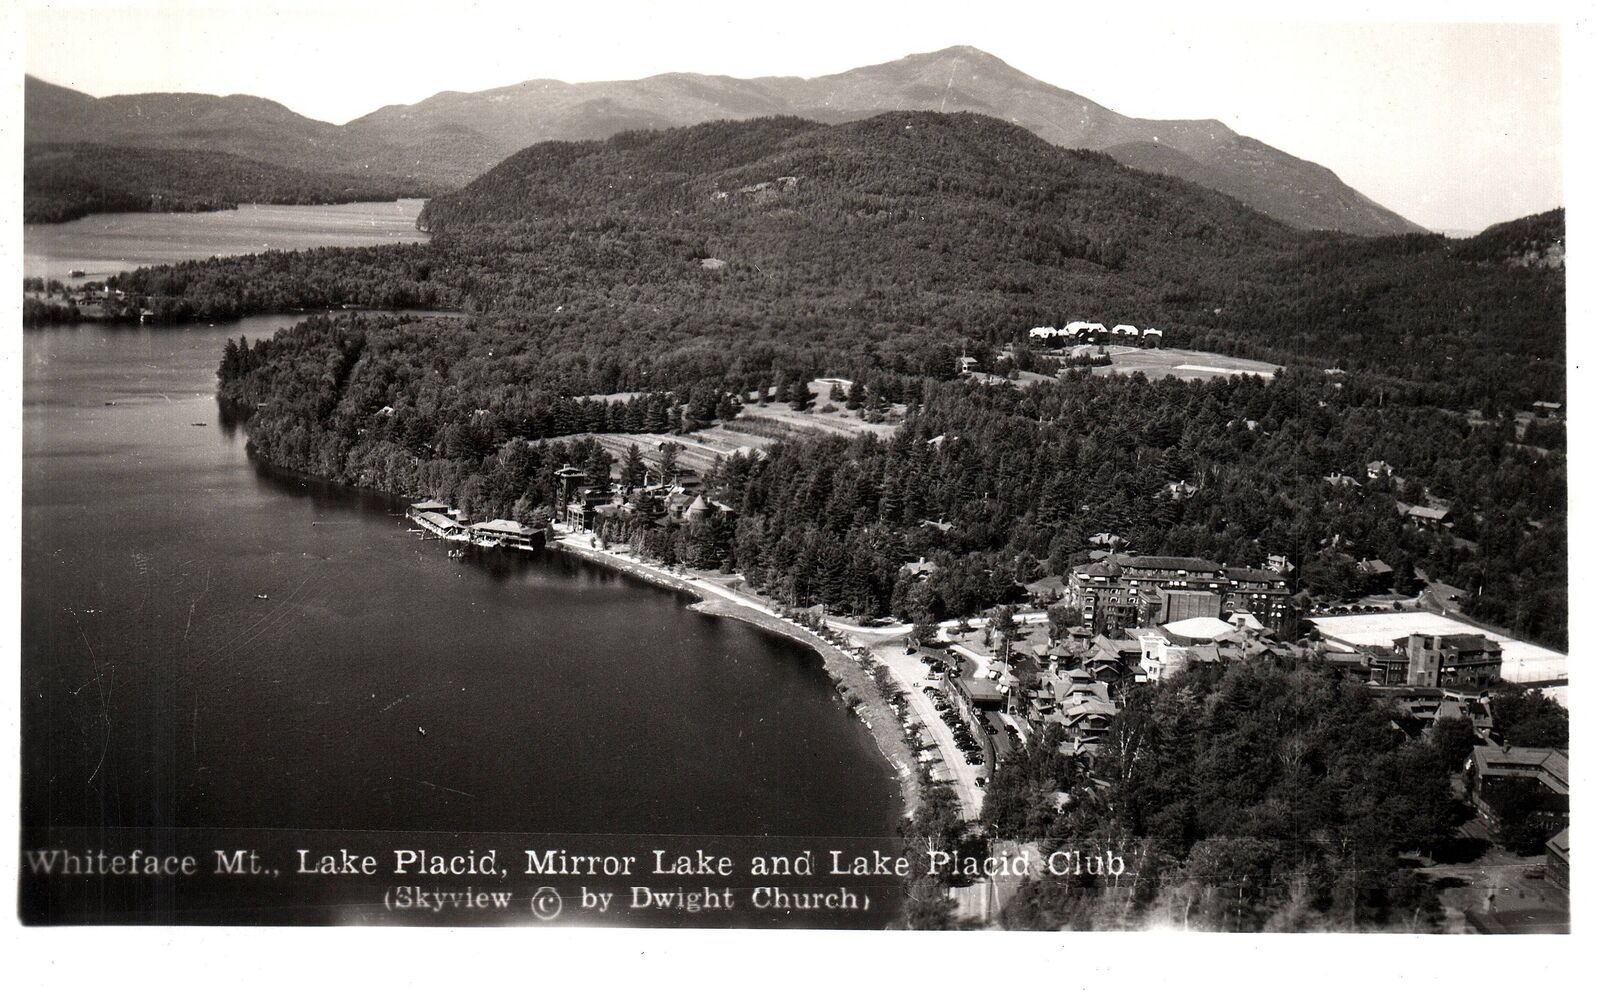 VINTAGE POSTCARD WHITEFACE MOUNT LAKE PLACID MIRROR LAKE REAL PHOTO c. 1940s